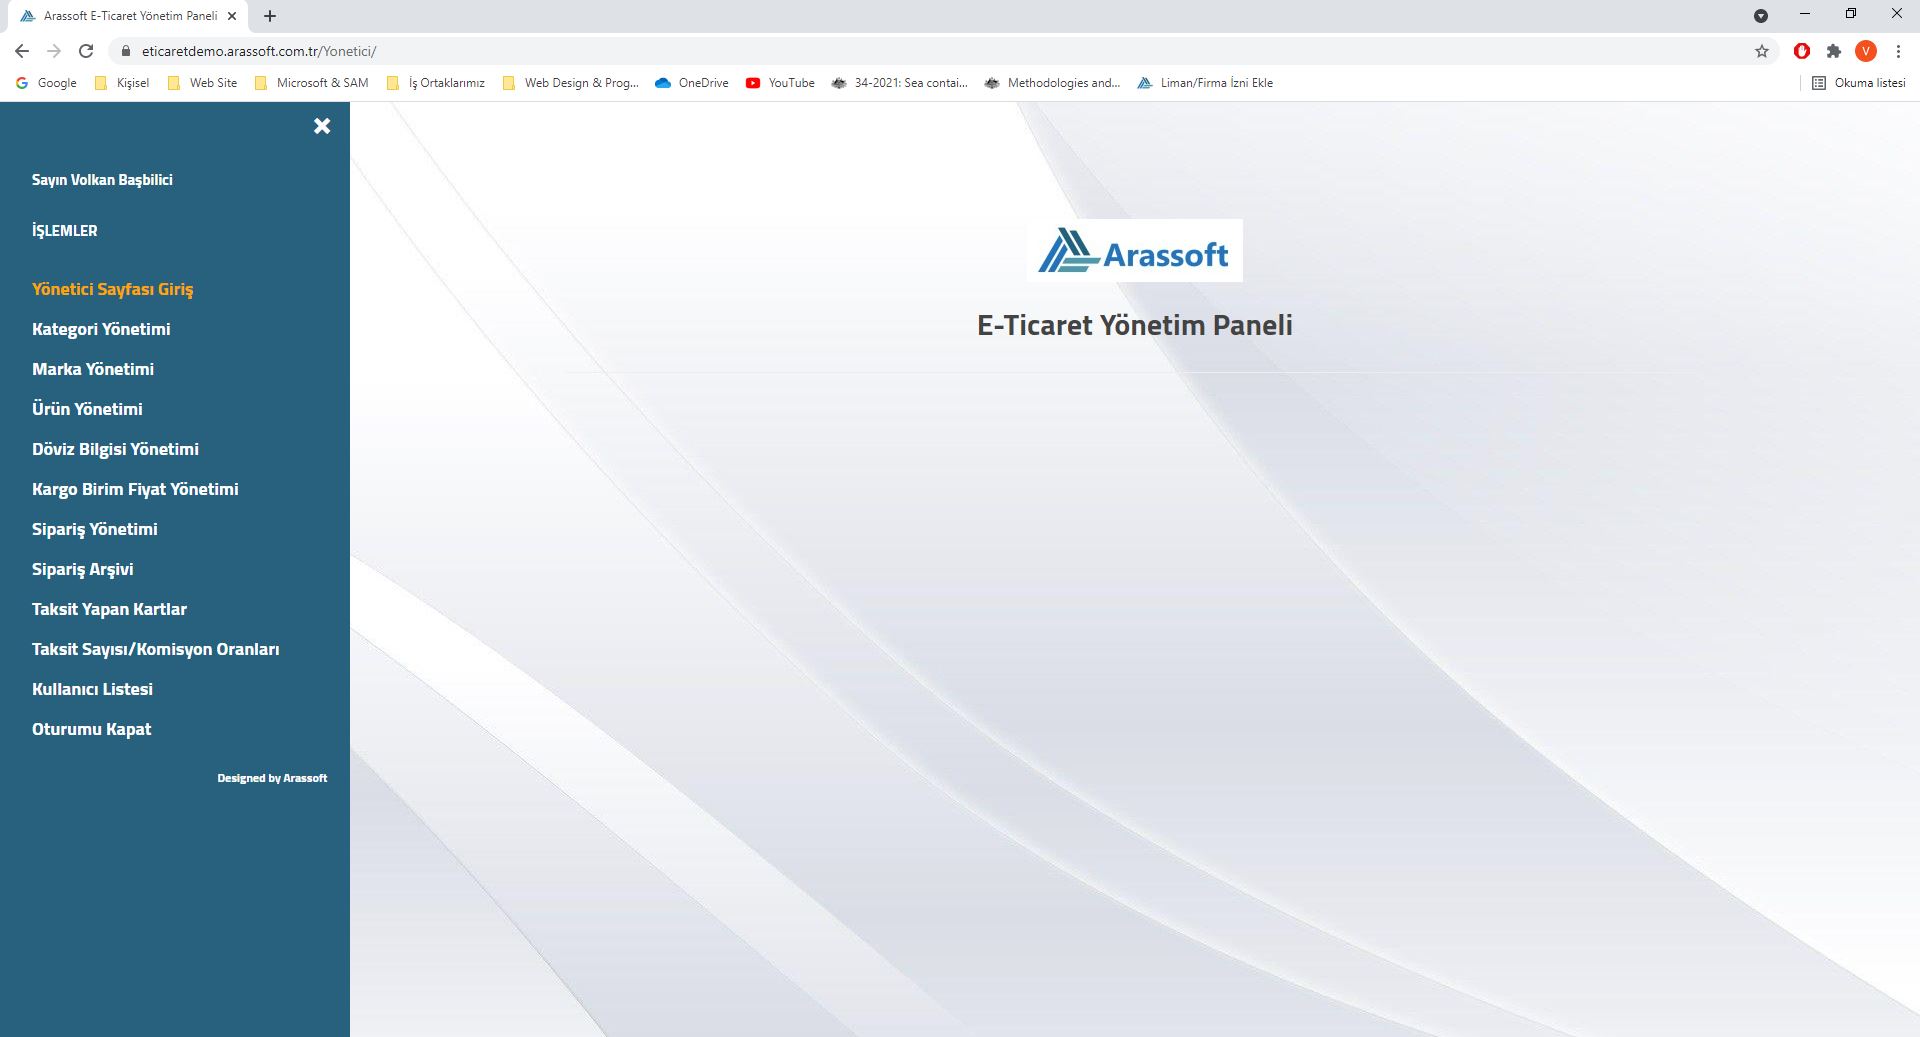 Arassoft E-Ticaret Yönetim Paneli